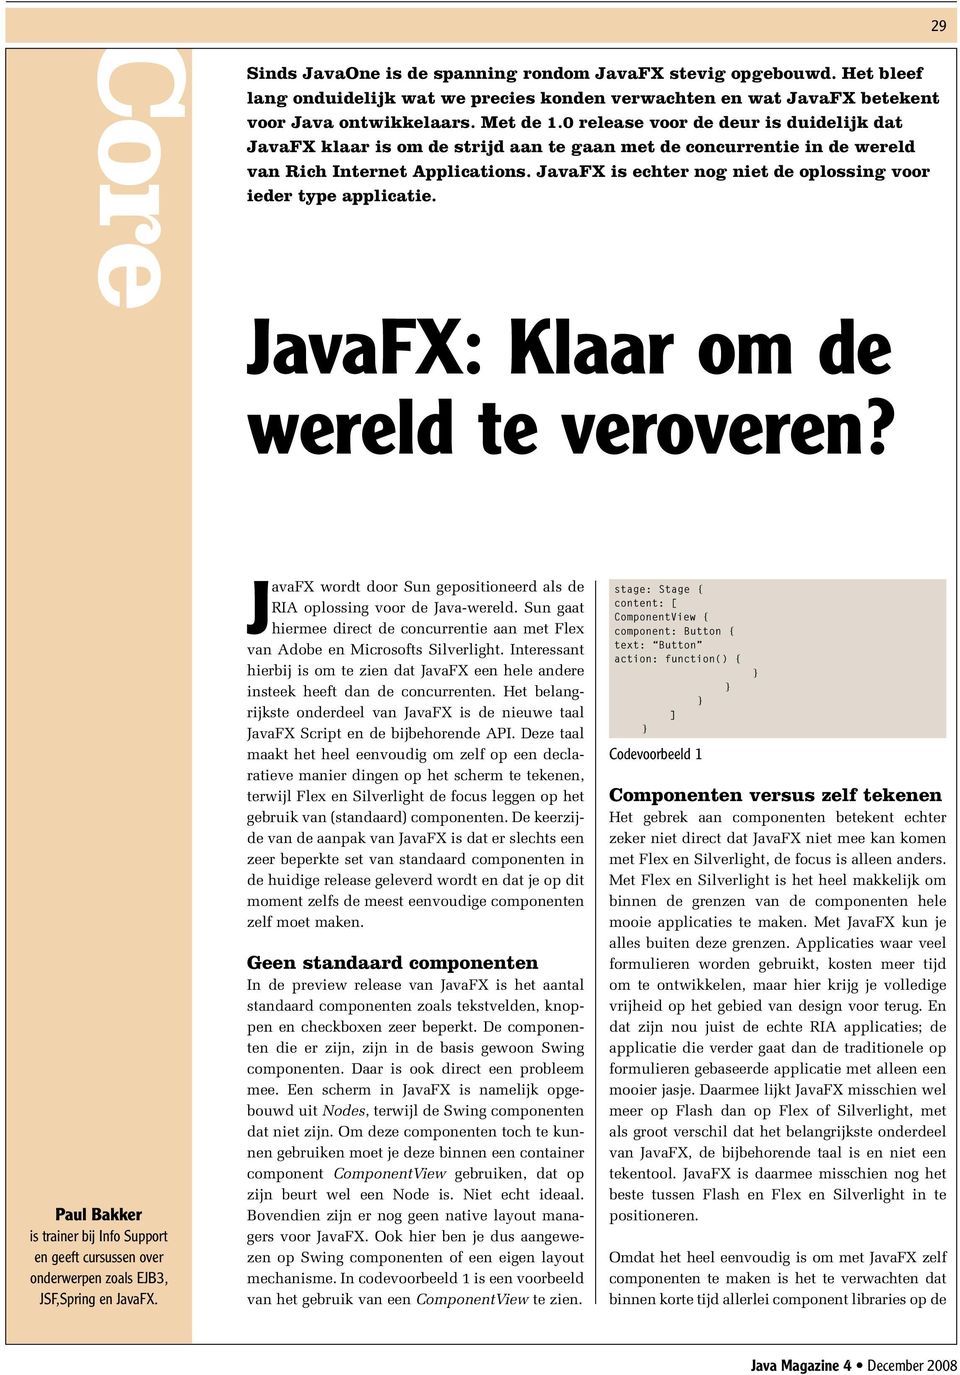 JavaFX is echter nog niet de oplossing voor ieder type applicatie. JavaFX: Klaar om de wereld te veroveren?